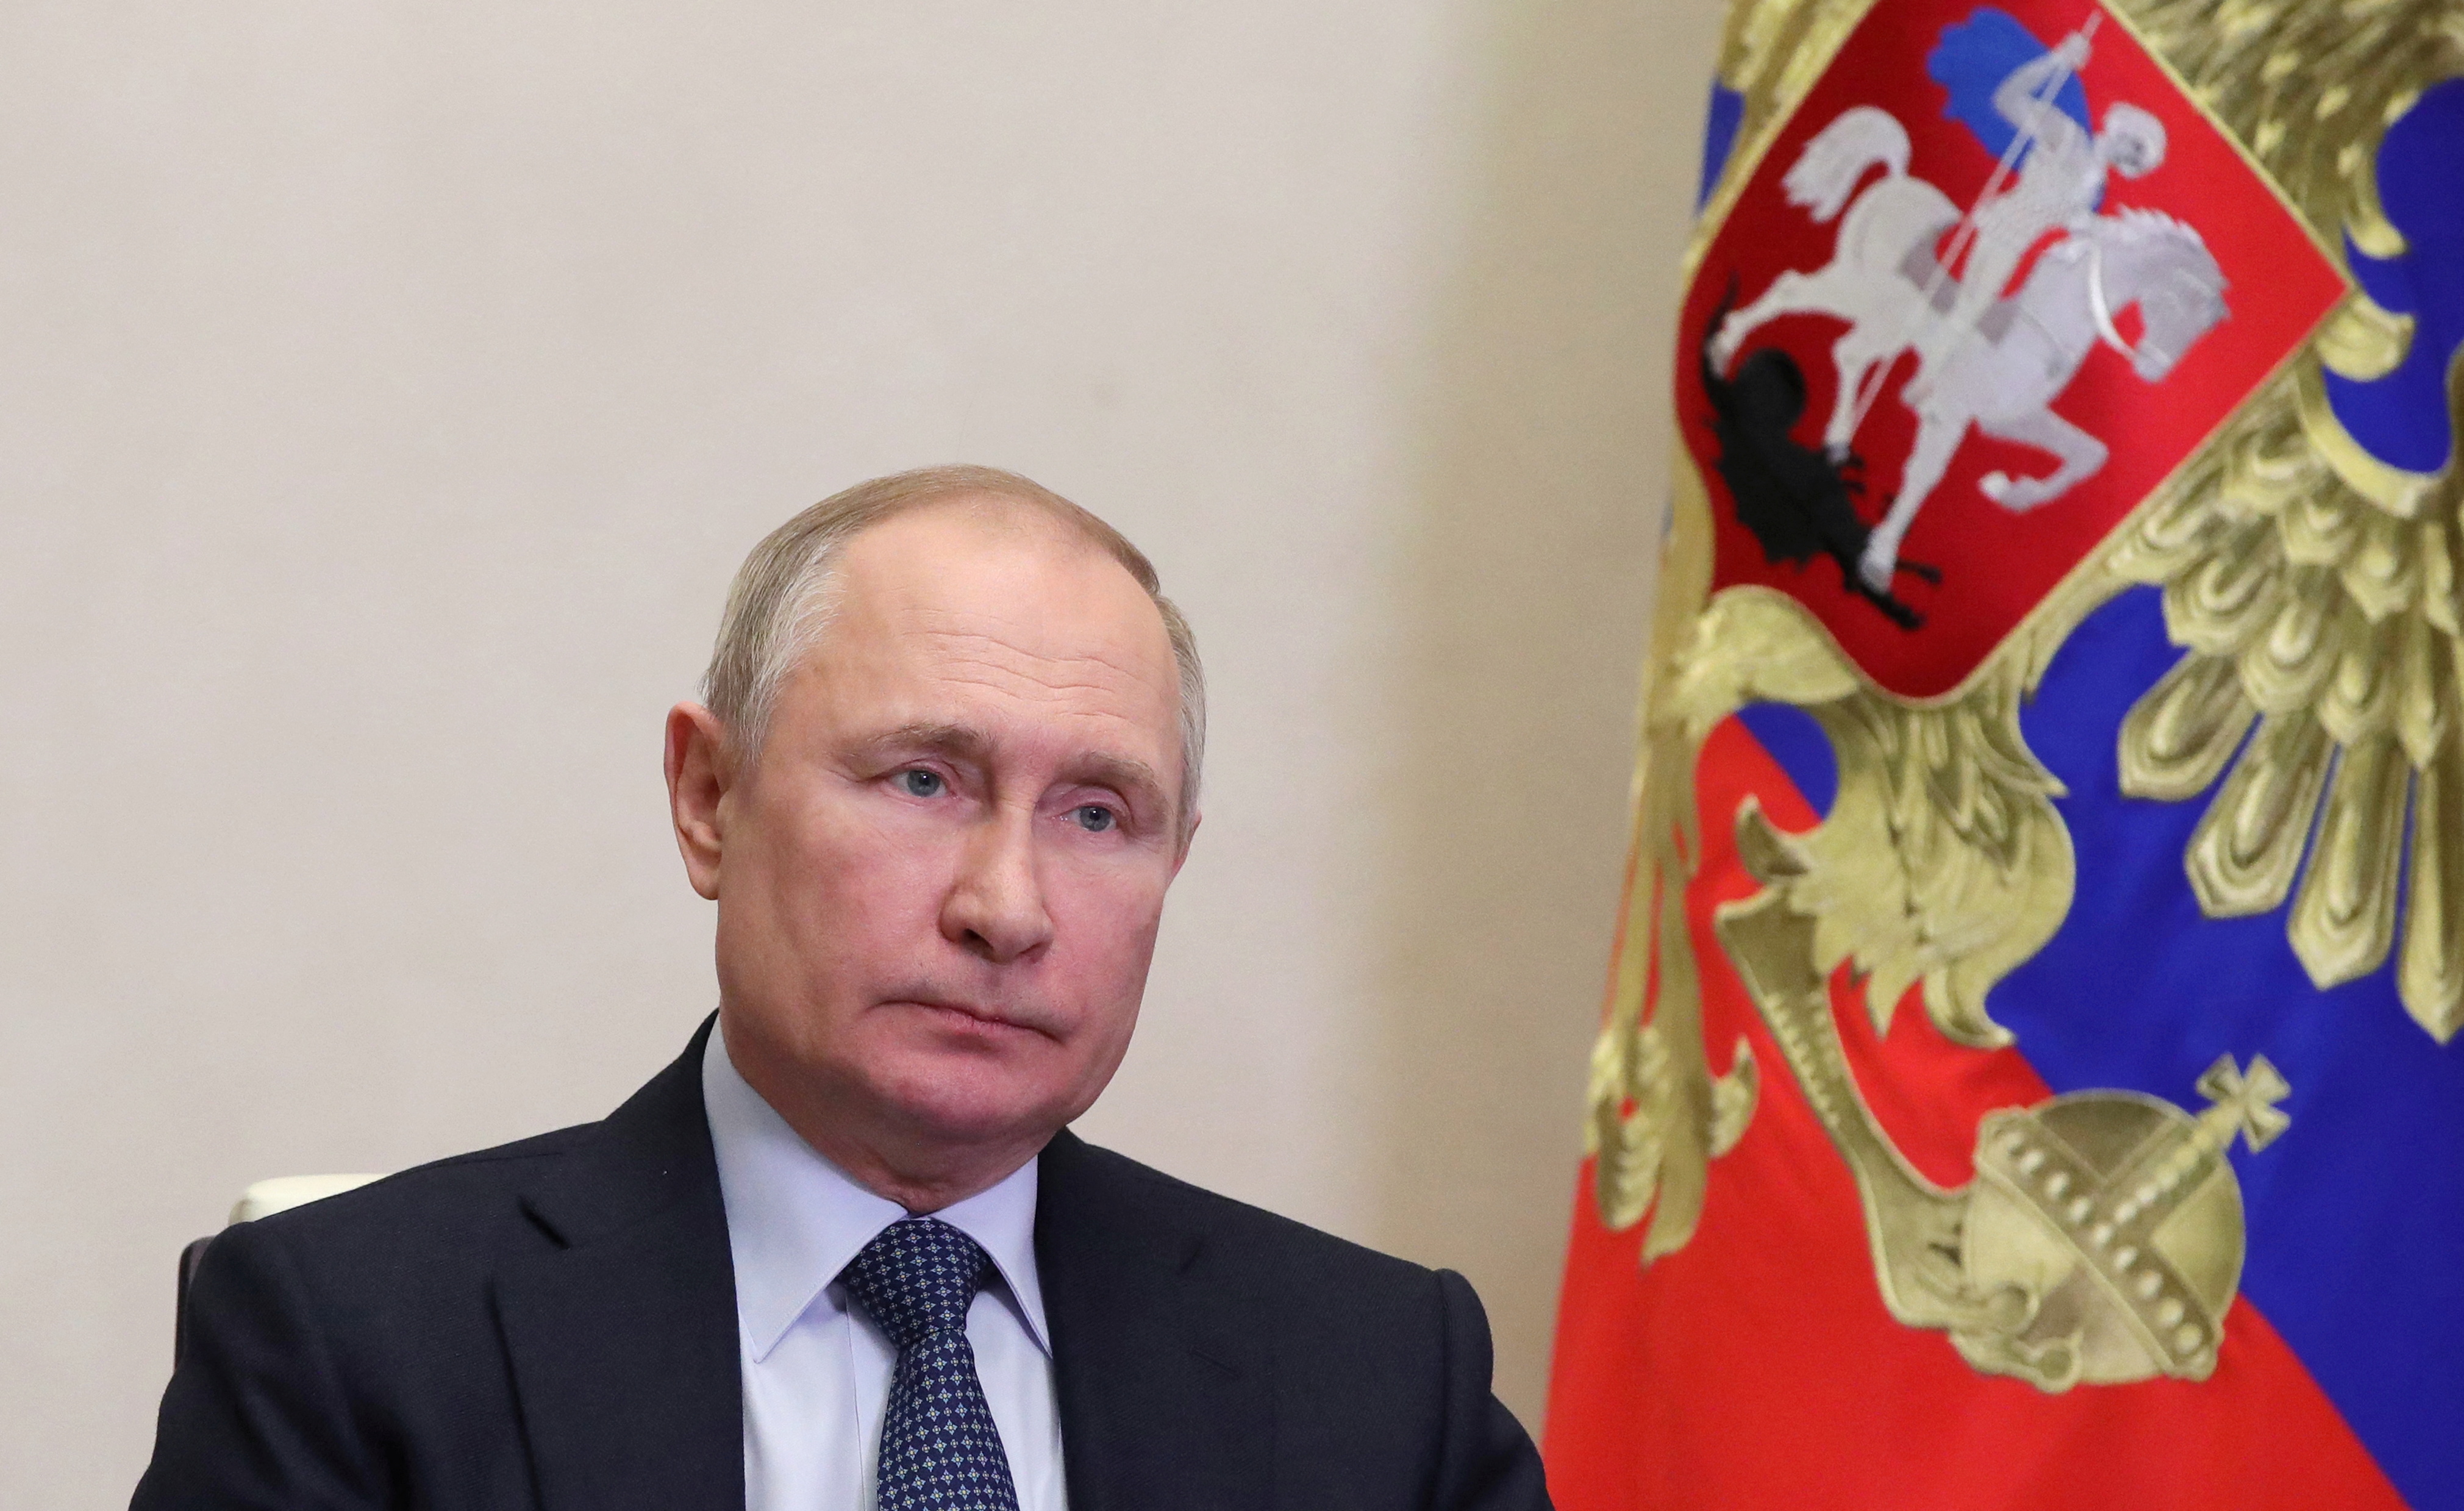 Los países aliados también coincidieron en señalar la necesidad de “aumentar el aislamiento internacional de Moscú” (Sputnik/Mikhail Klimentyev/Kremlin via REUTERS)